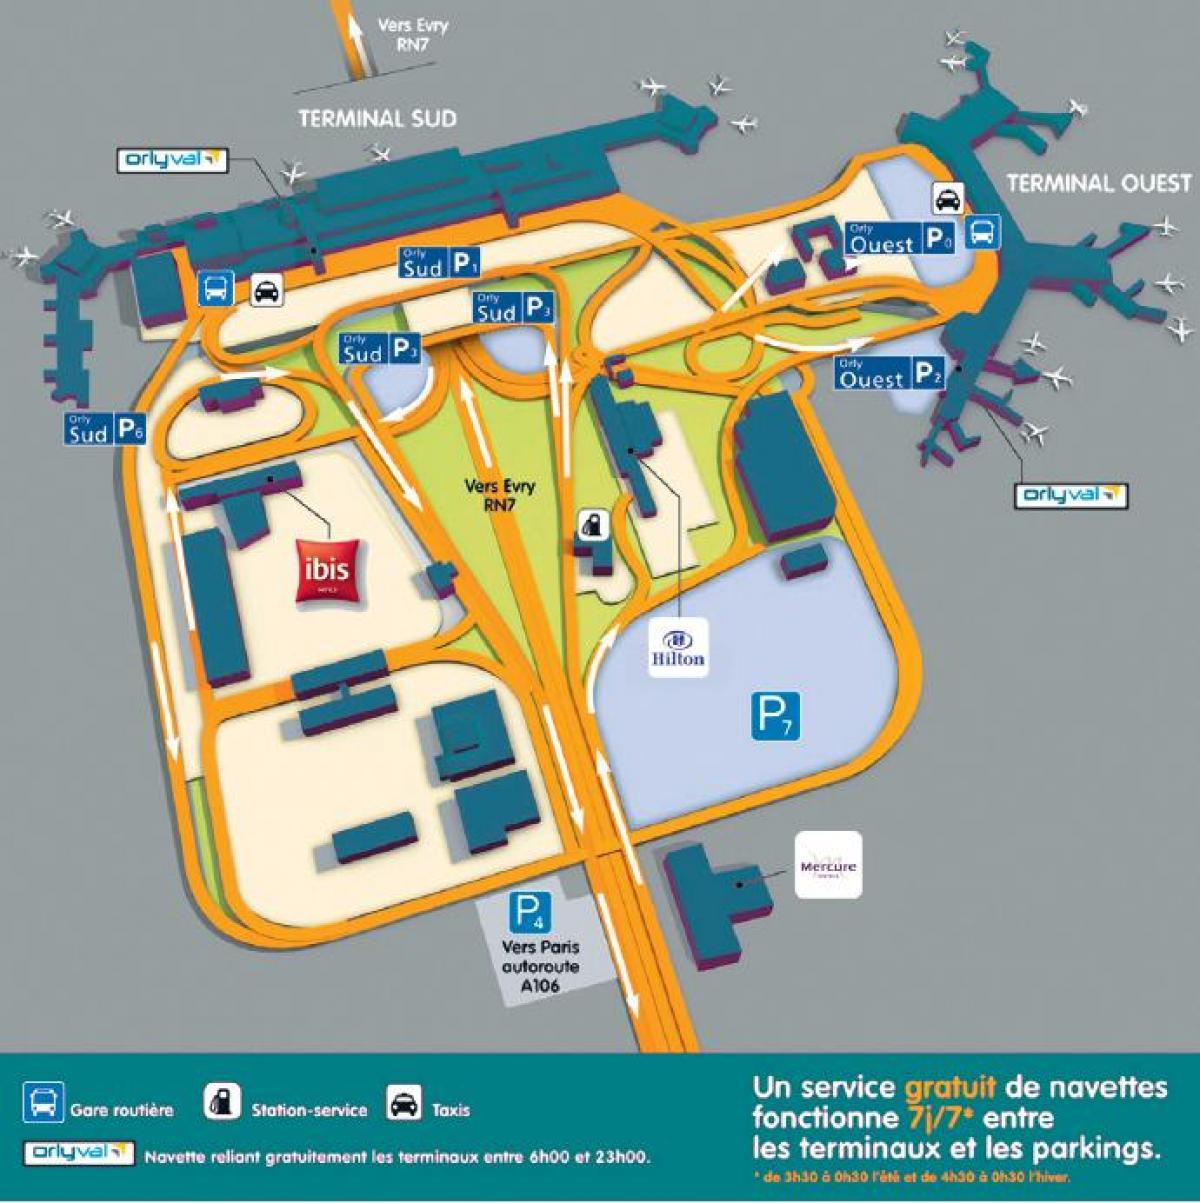 Kort over Orly lufthavn